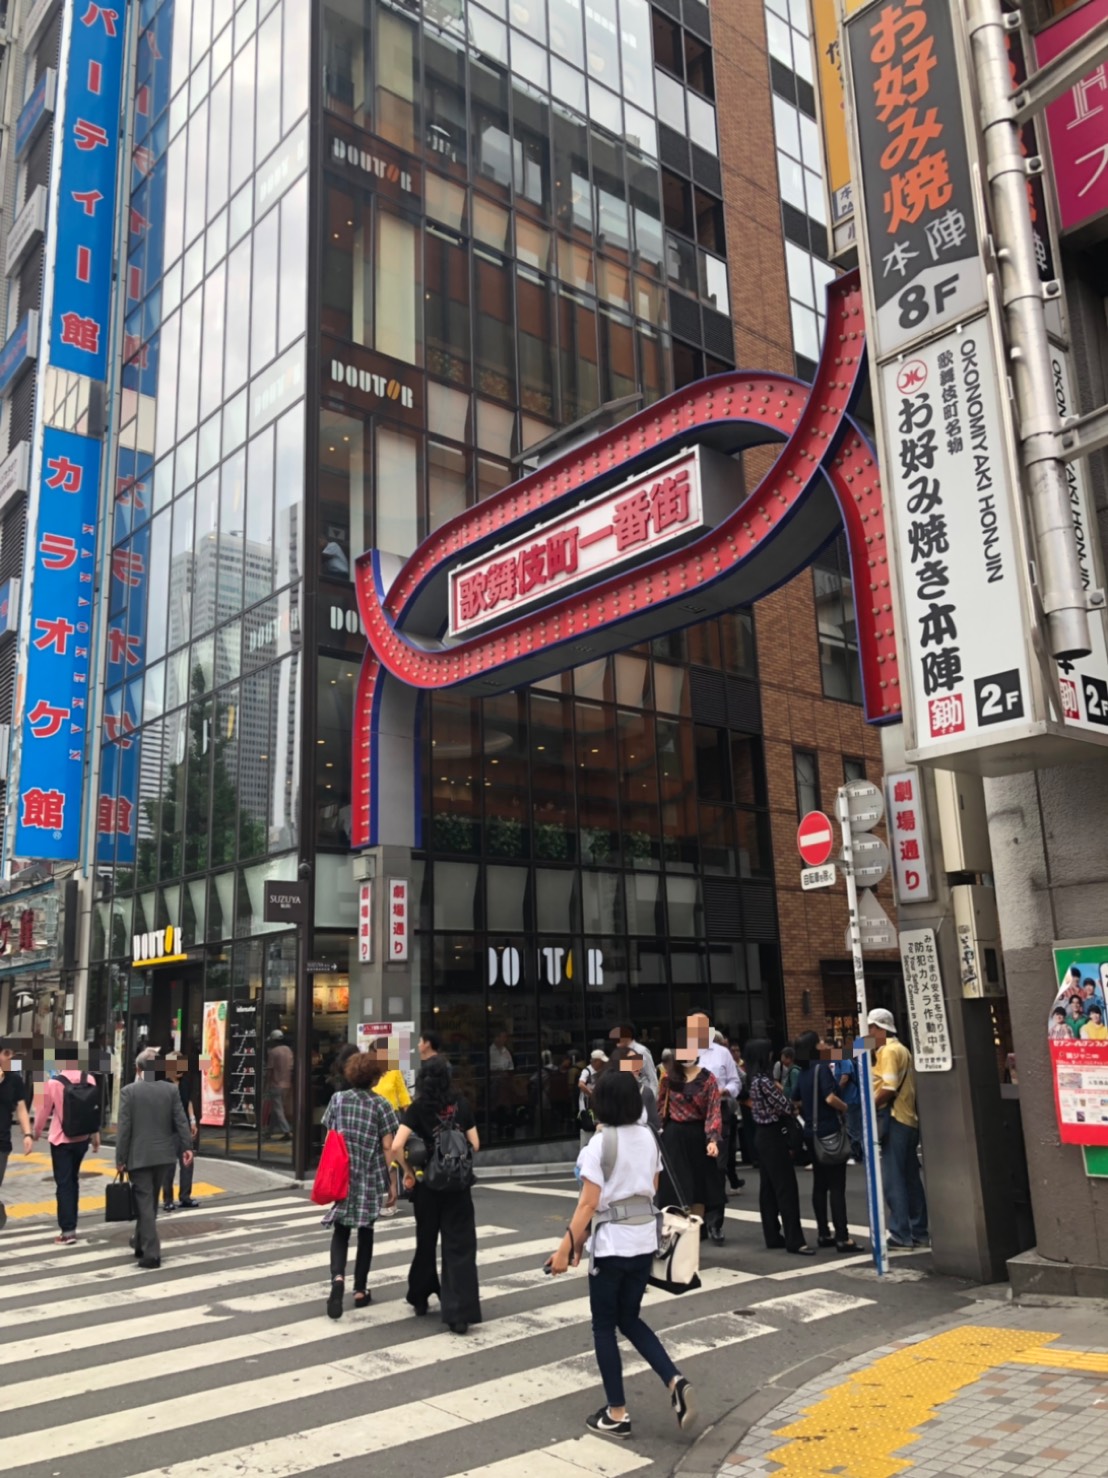 4.「歌舞伎町一番街」の看板が見えましたら、その通りを入って下さい。